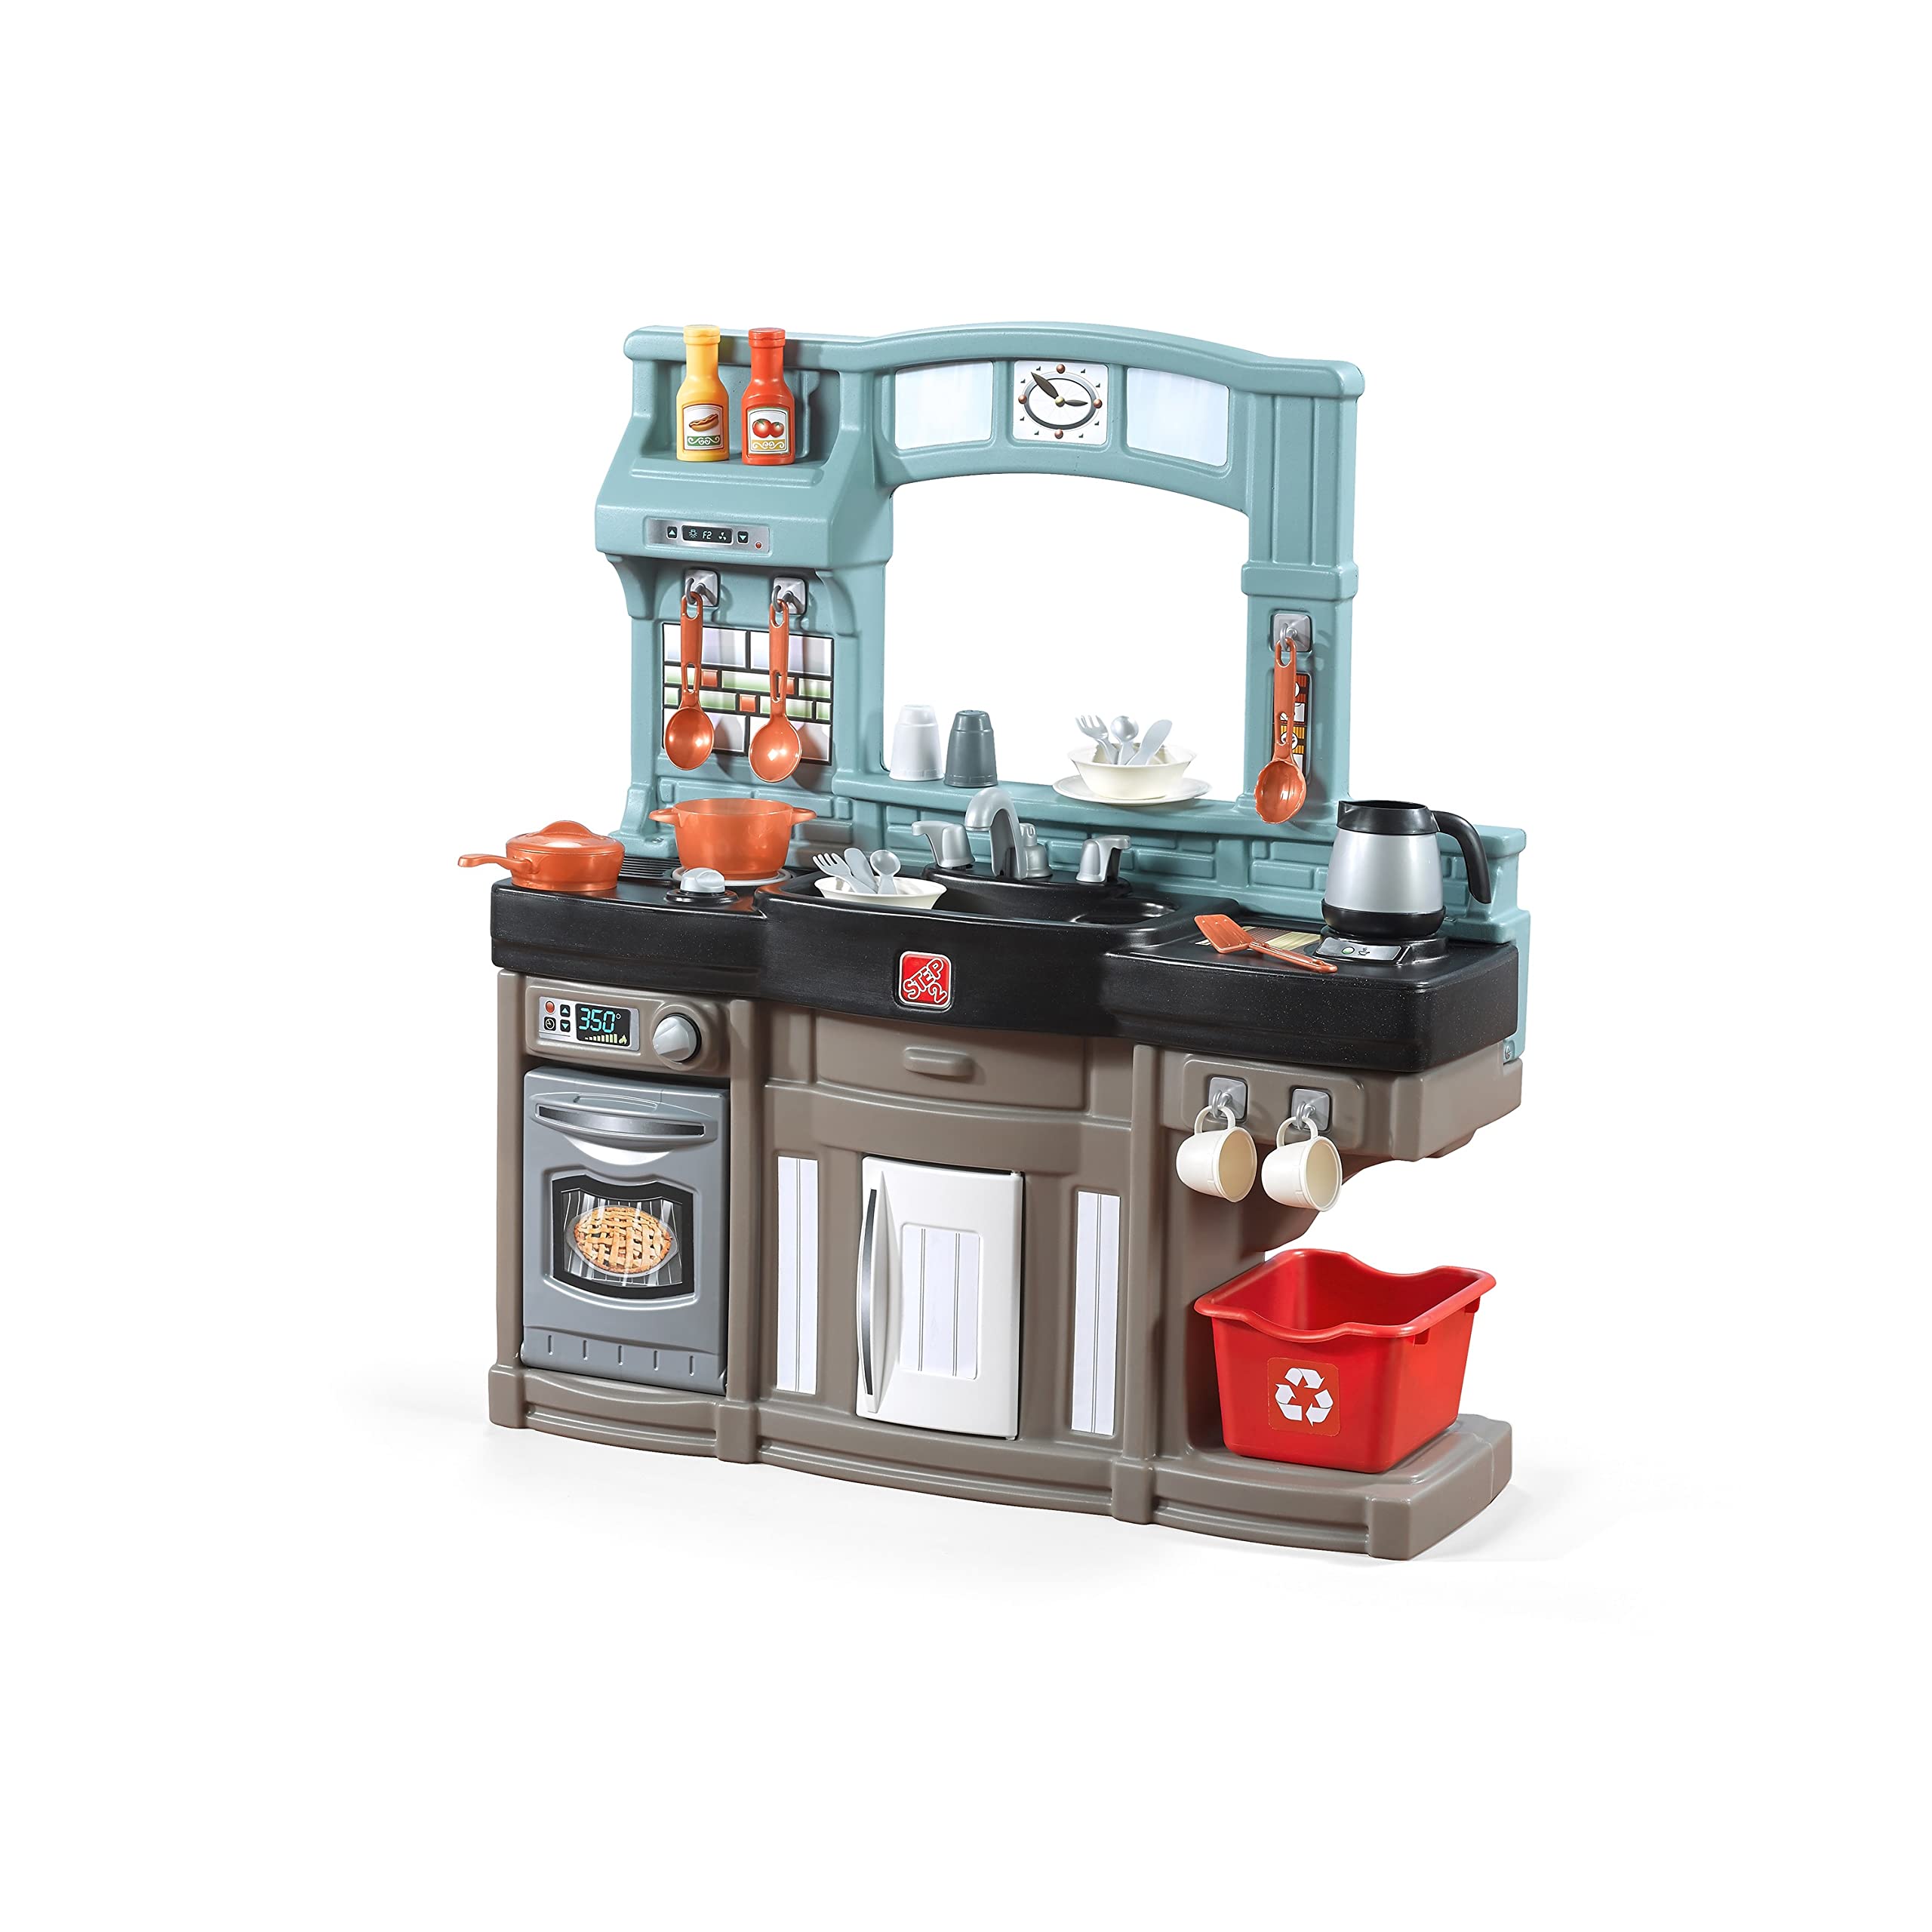 Step2 Best Chefs 儿童厨房套装包括 25 个玩具厨房配件、互动功能，可实现逼真的假装游戏室内/室外幼儿玩具套装尺寸：35.8 高 x 34.4 宽 x 11.5 深